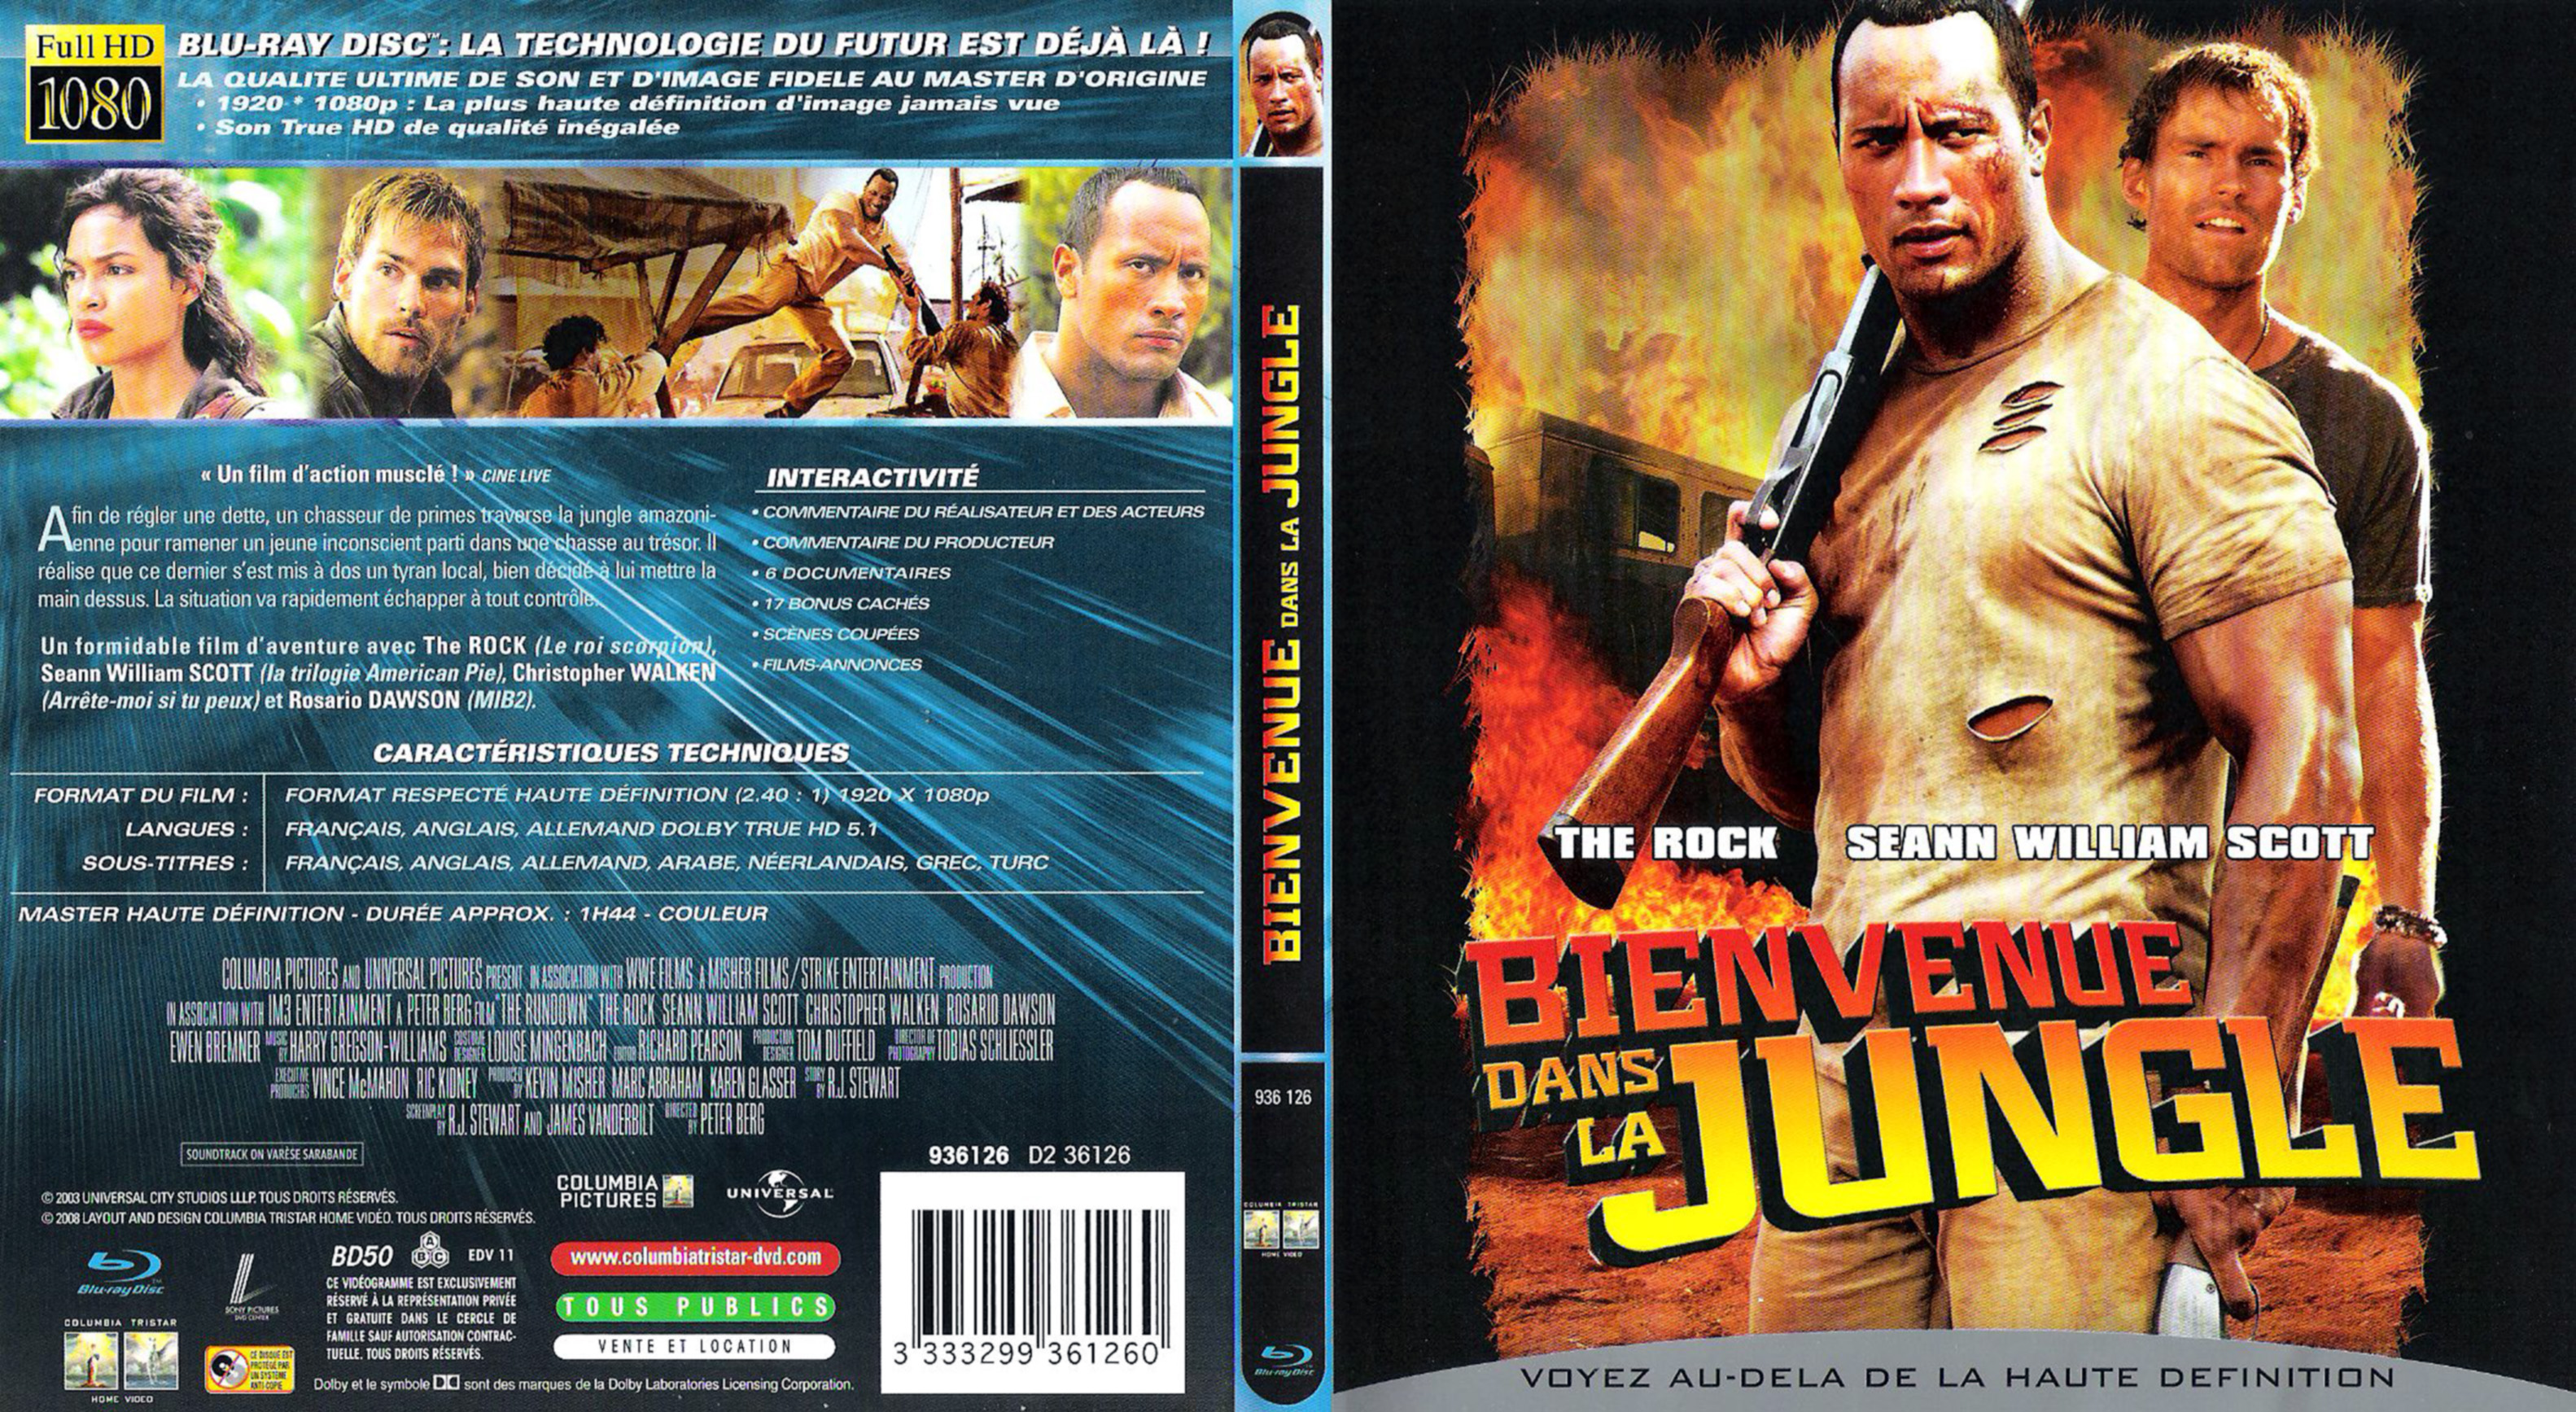 Jaquette DVD Bienvenue dans la jungle (BLU-RAY)